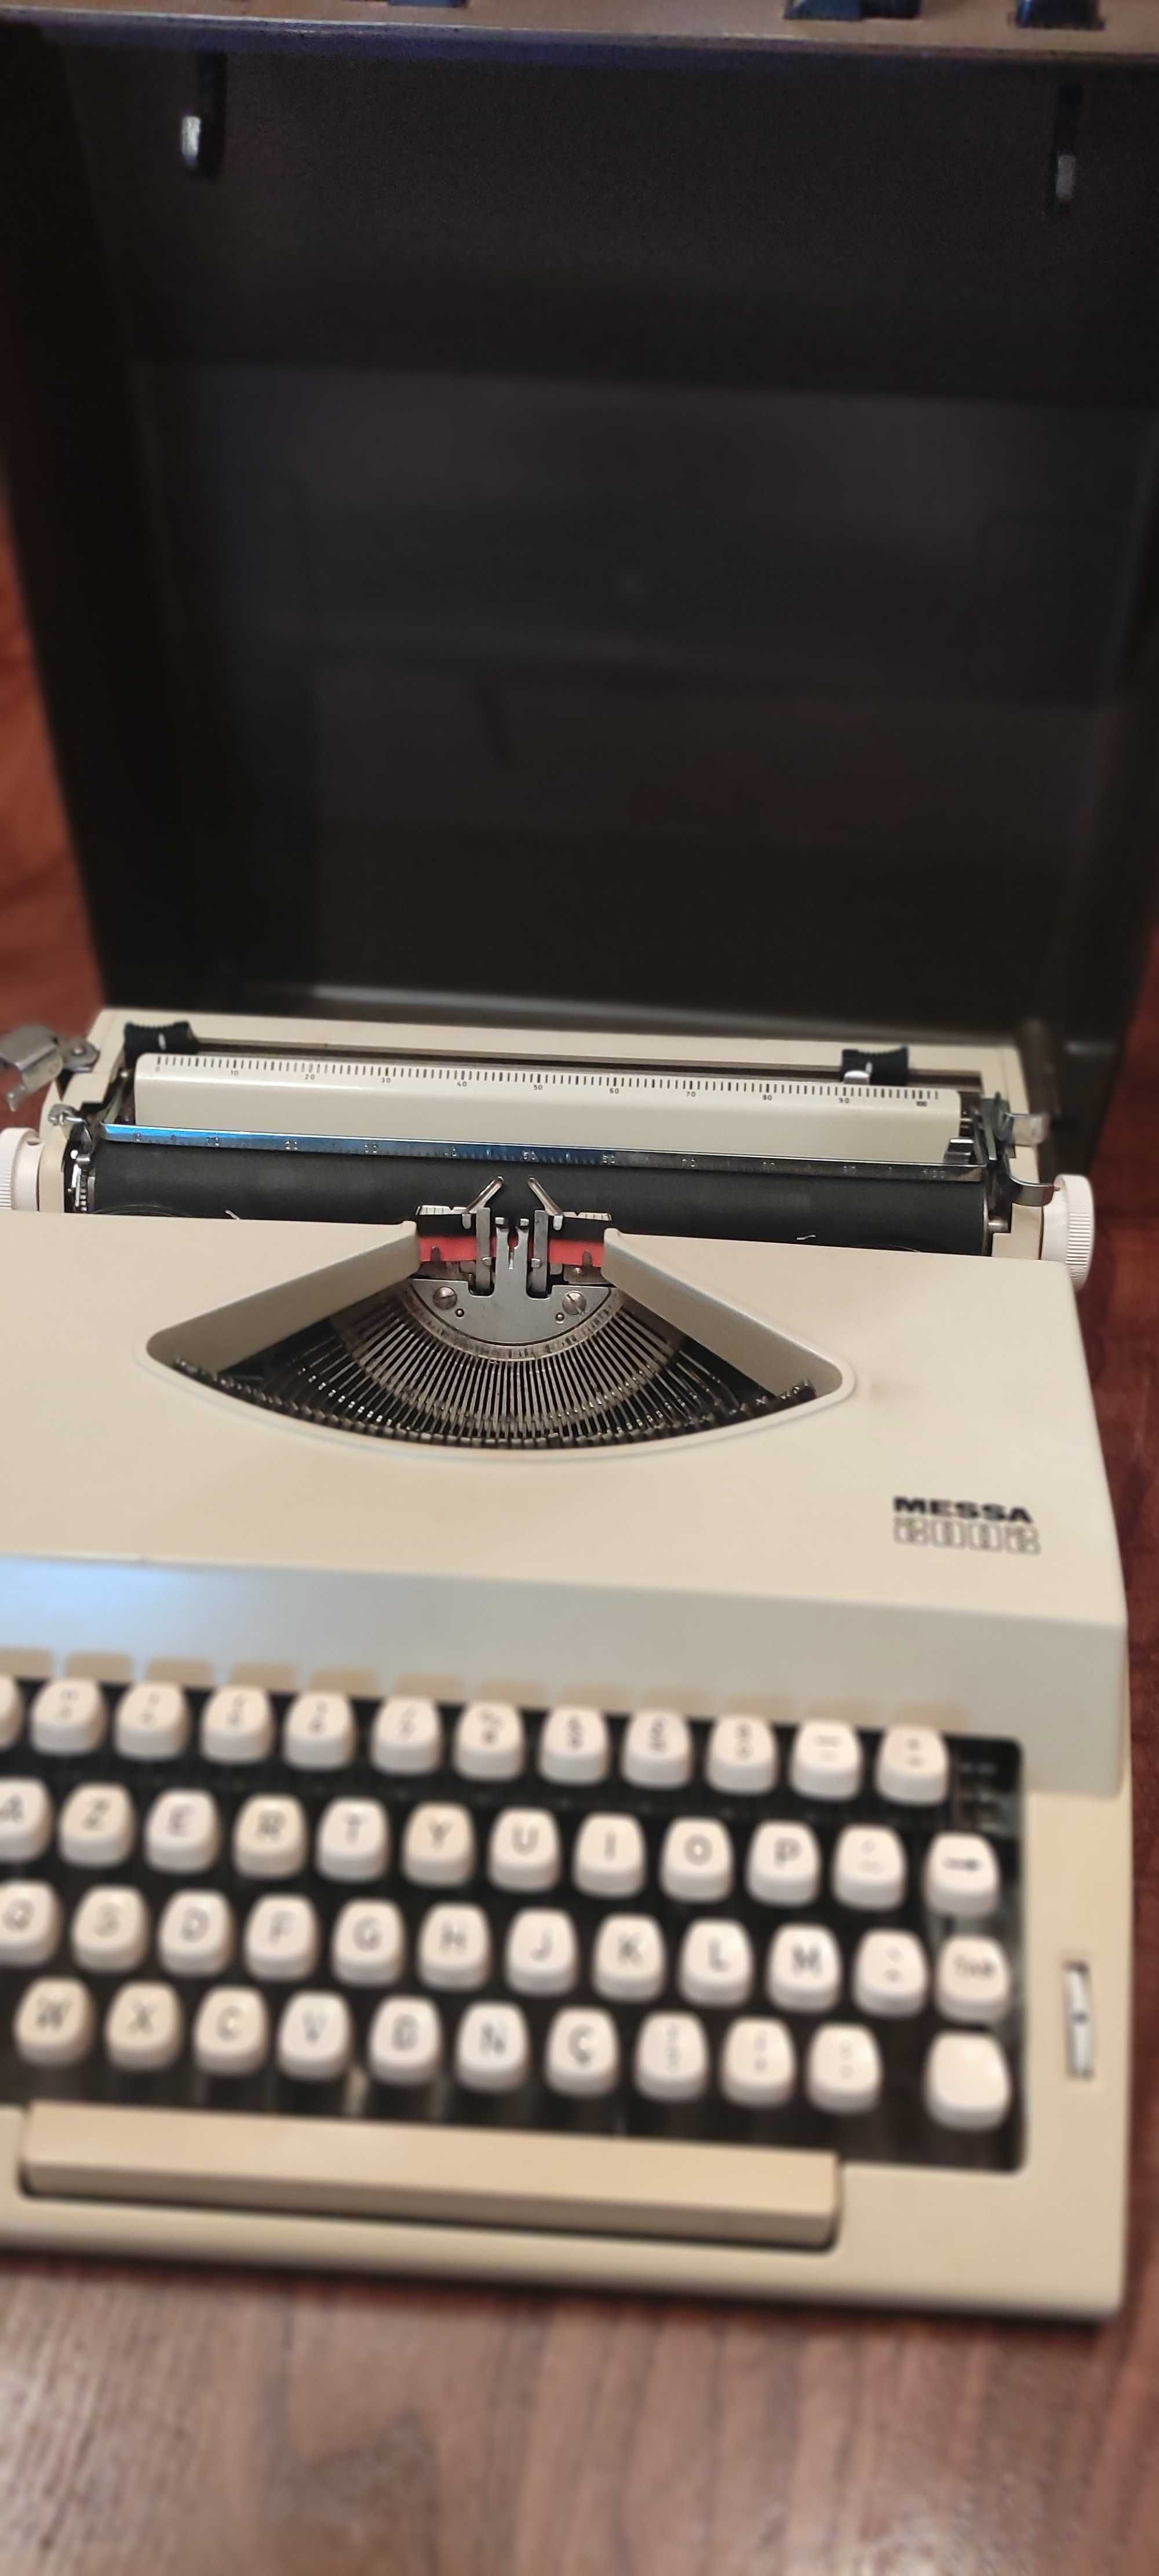 Maquina de escrever Messa 2002